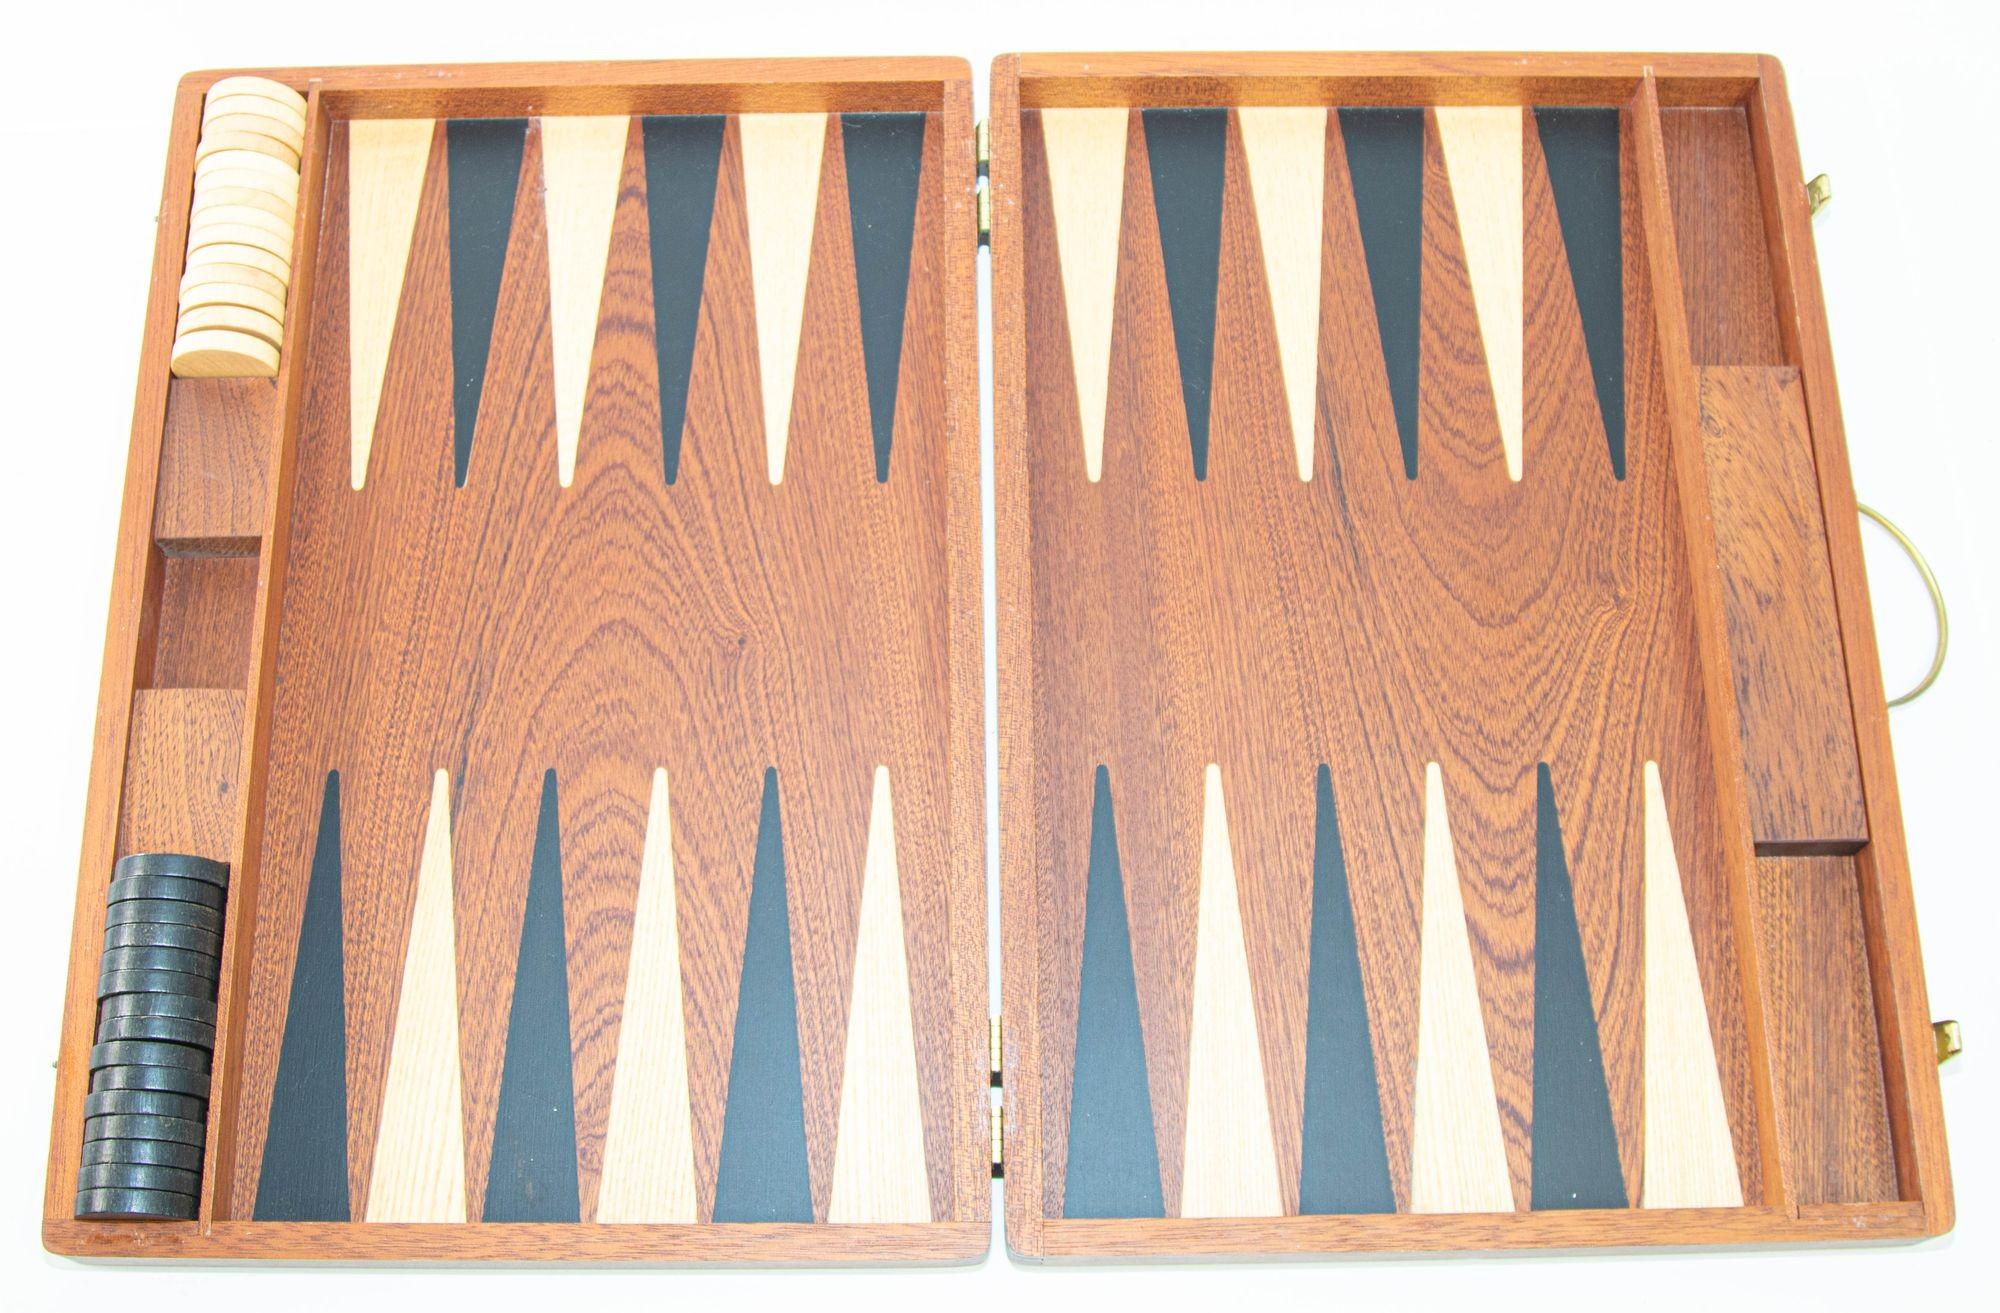 Boîte de jeu de backgammon vintage en Wood, circa 1950
Jeu de backgammon vintage en bois de chêne dans sa mallette.
Grand jeu de backgammon portable en bois, fabriqué à la main, avec des pièces en bois.
Magnifique jacquet en bois naturel huilé à